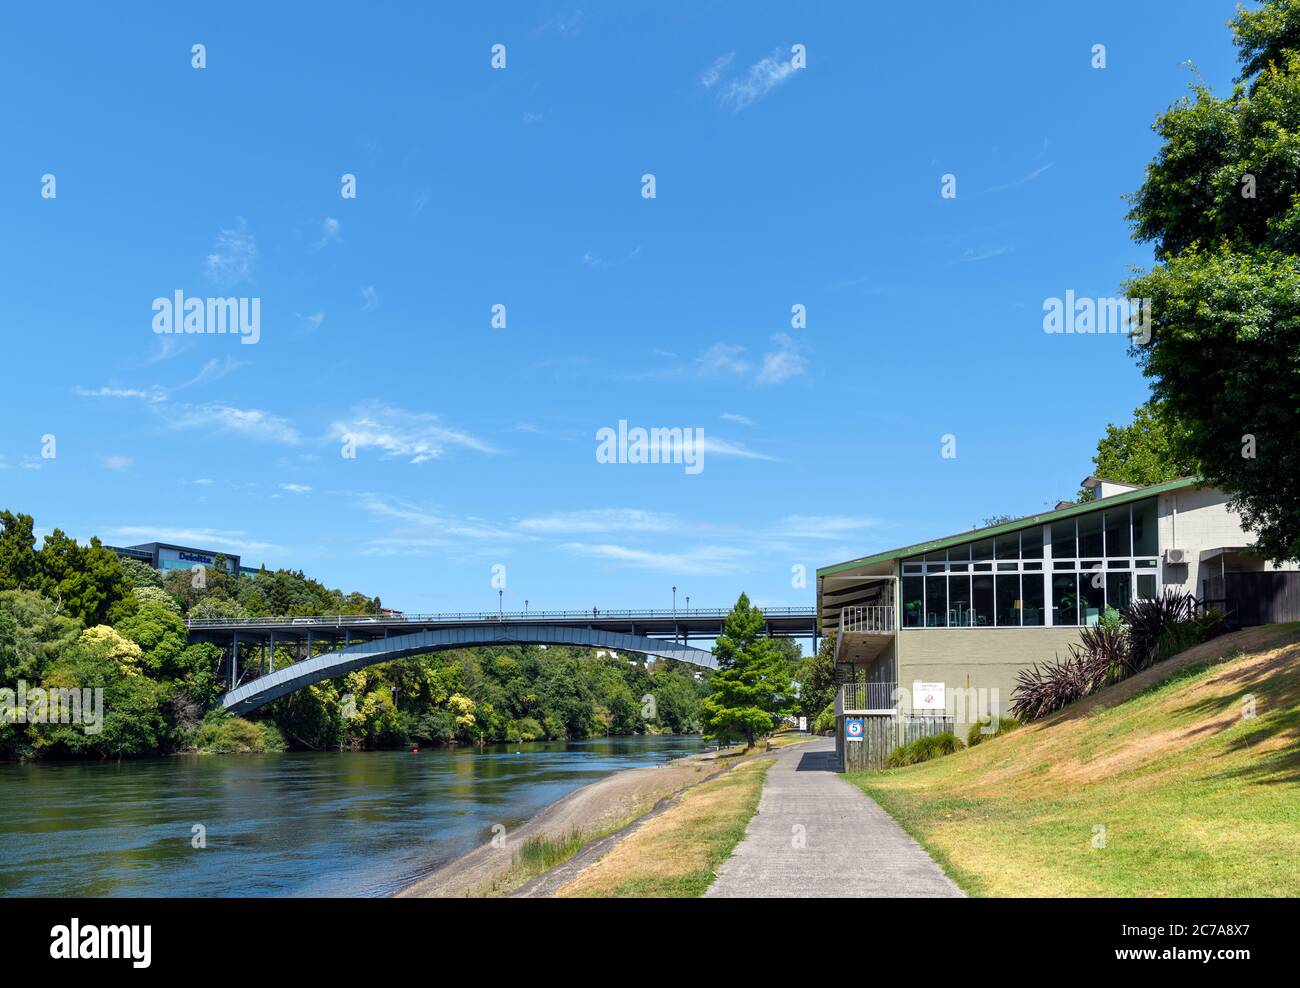 Footpath along the banks of the Waikato River, Hamilton, New Zealand Stock Photo